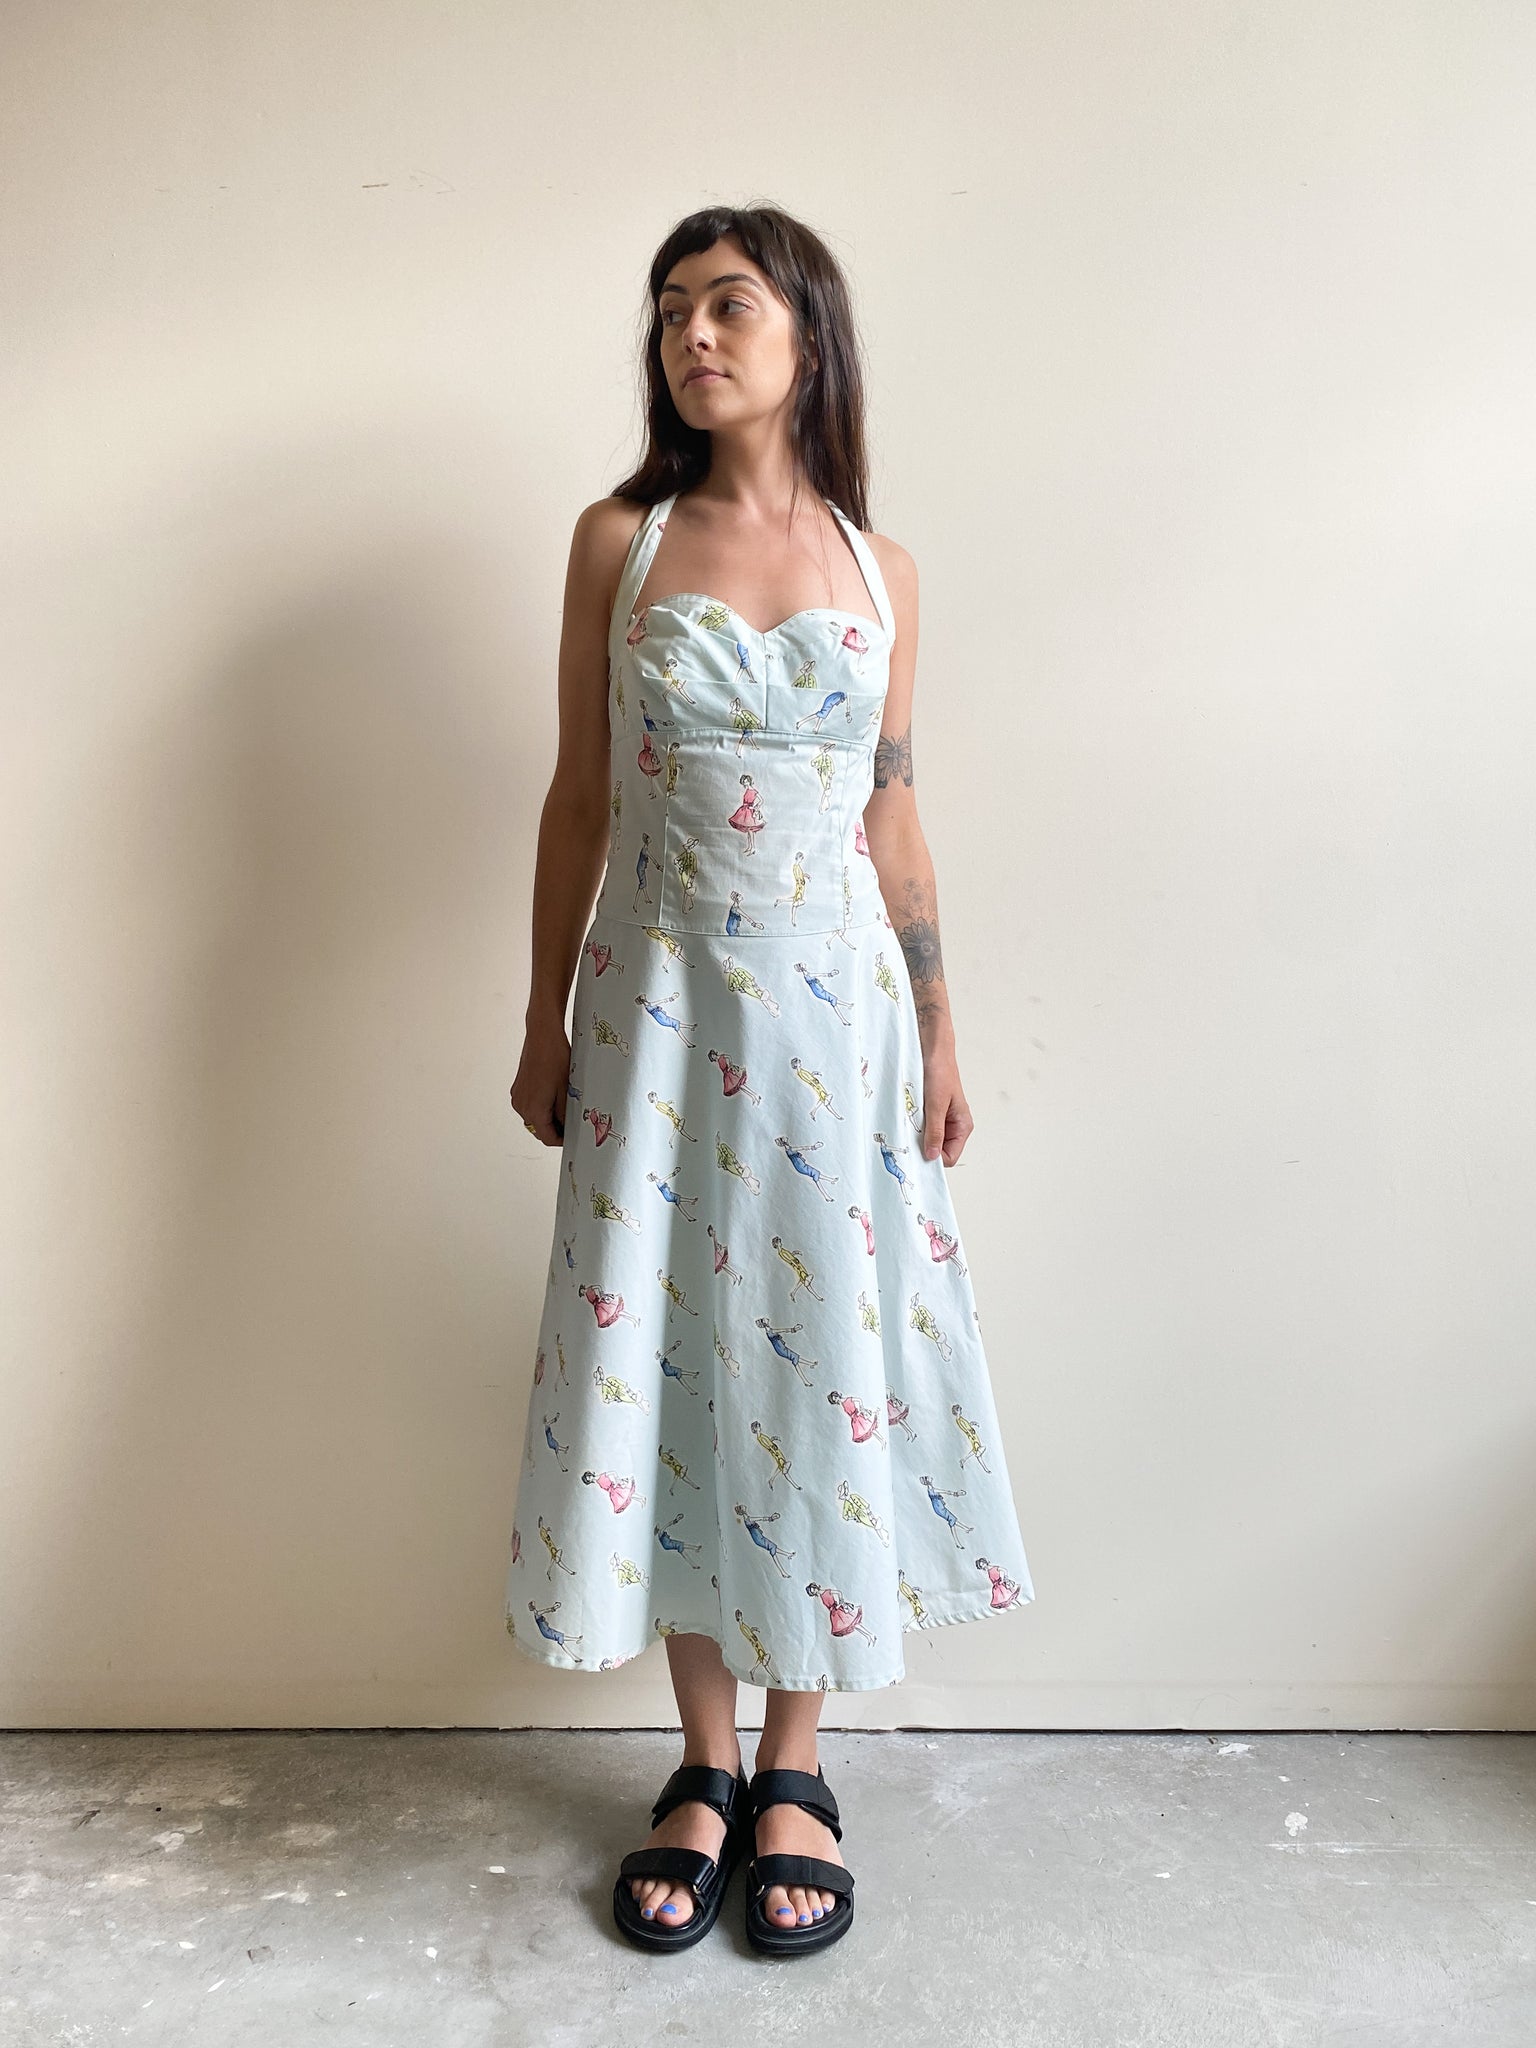 Freckled Nest: Vintage Dress Shopping Online - PART 1